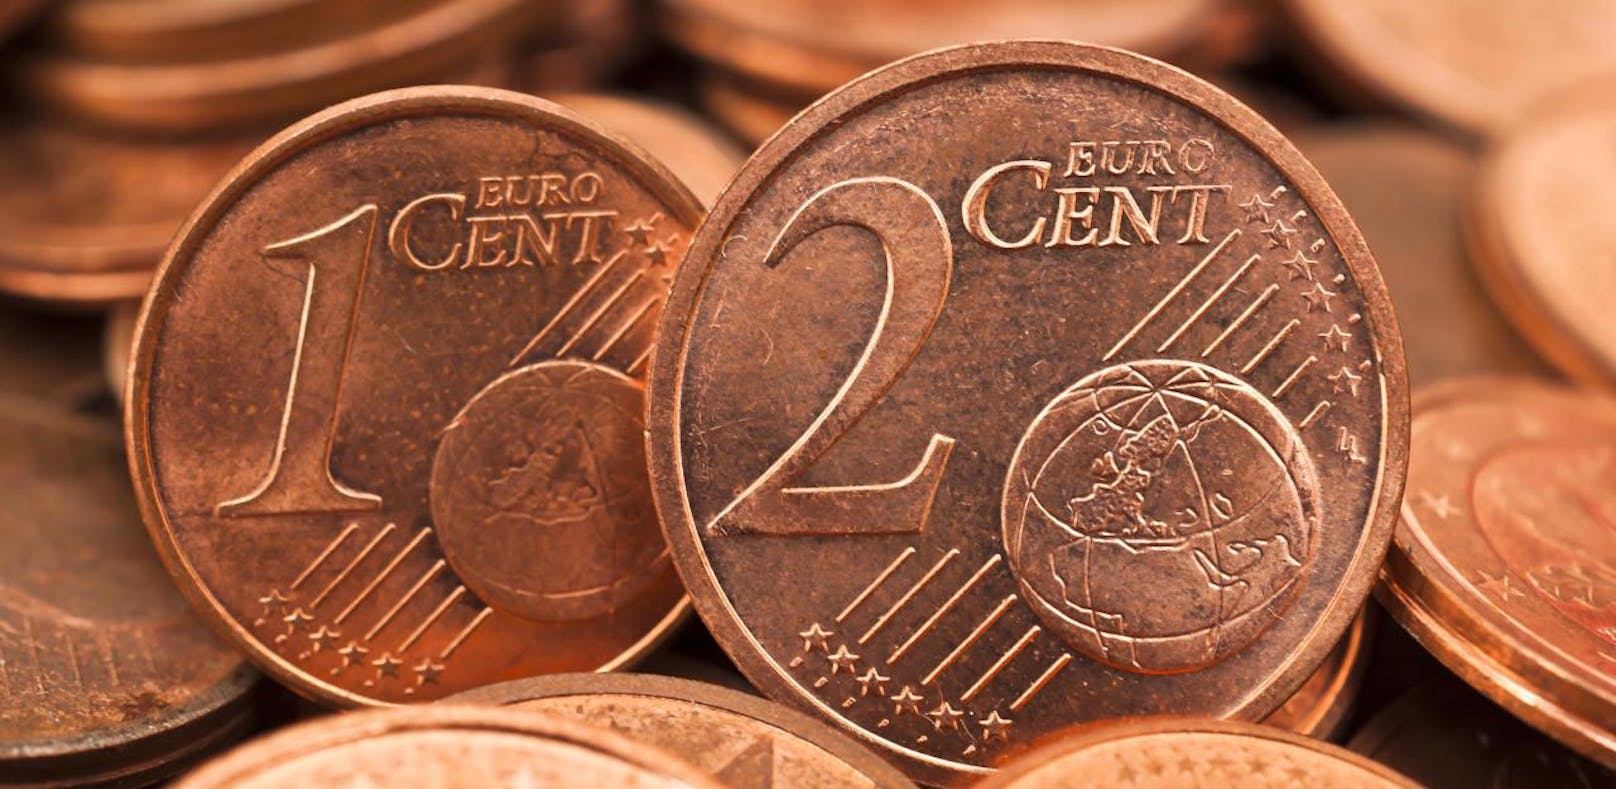 Italien schafft die kleinsten Cent-Münzen ab